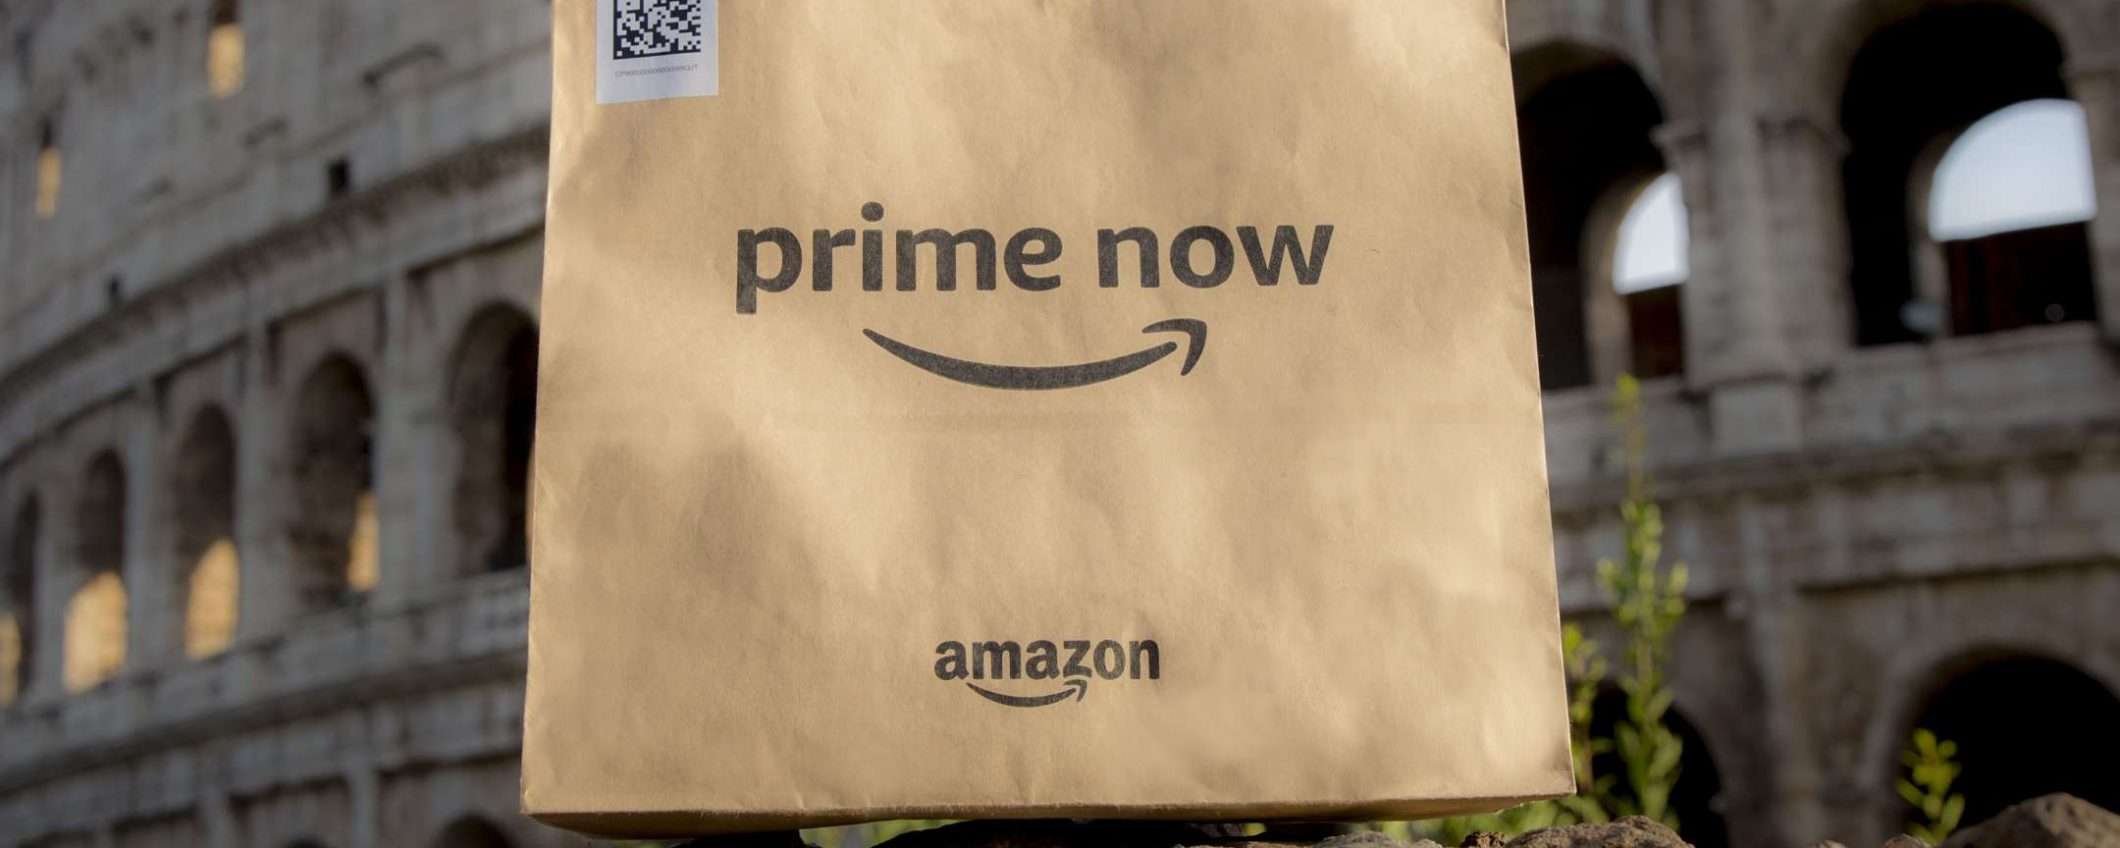 Amazon Prime Now, anche Roma è servita